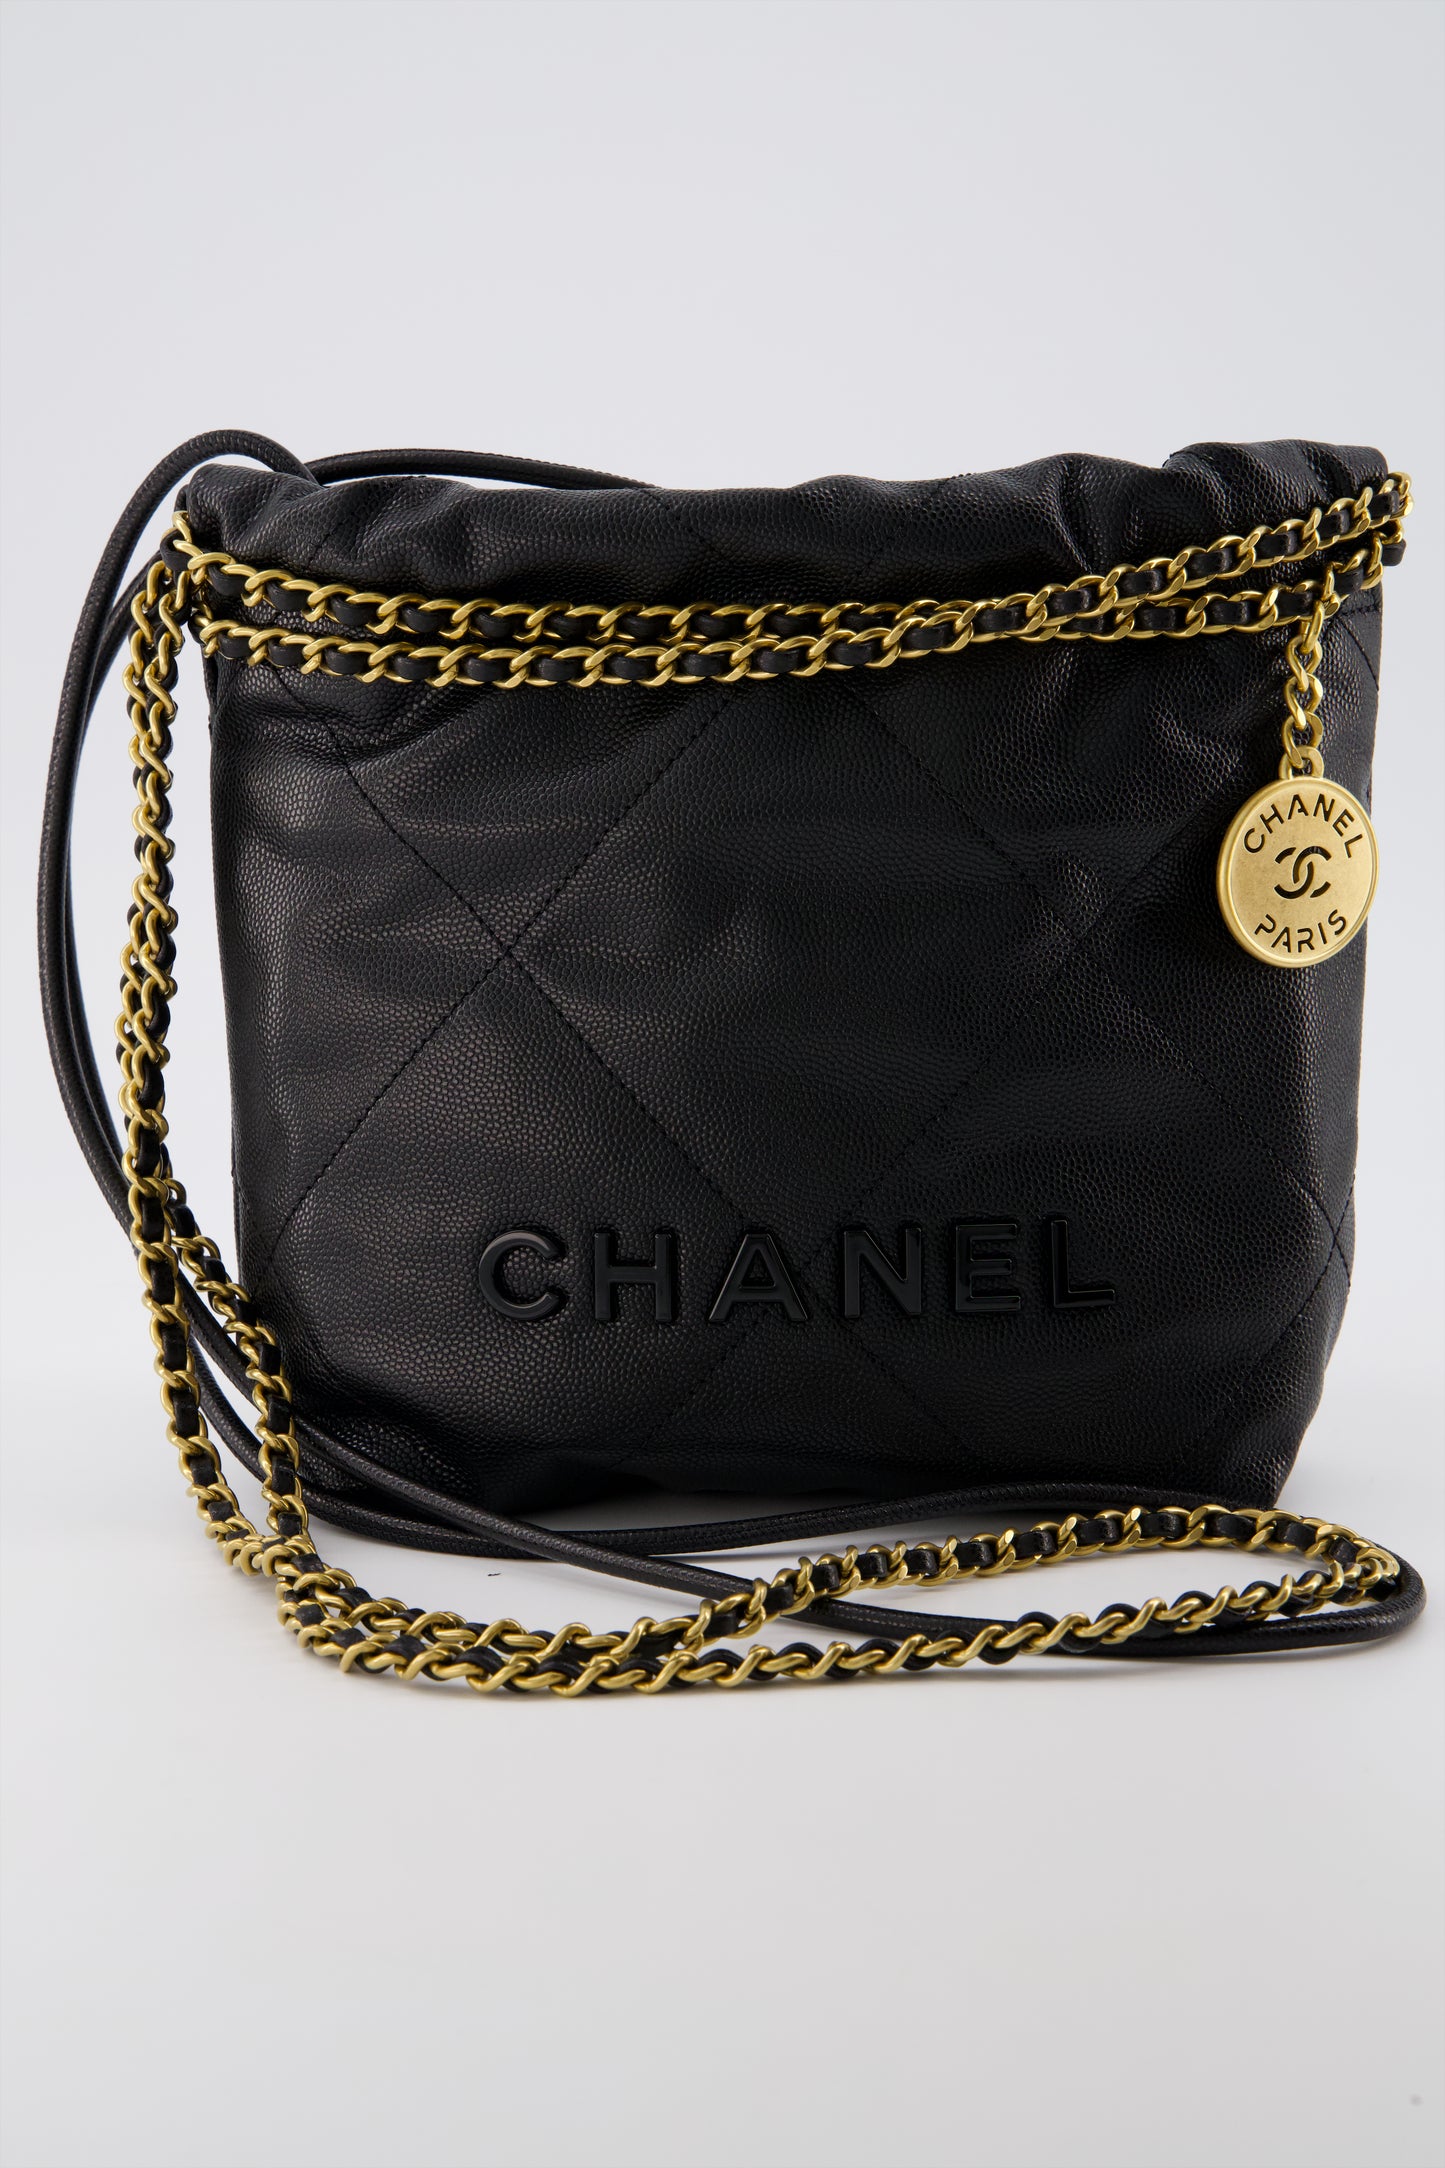 Chanel (Brushed Black)